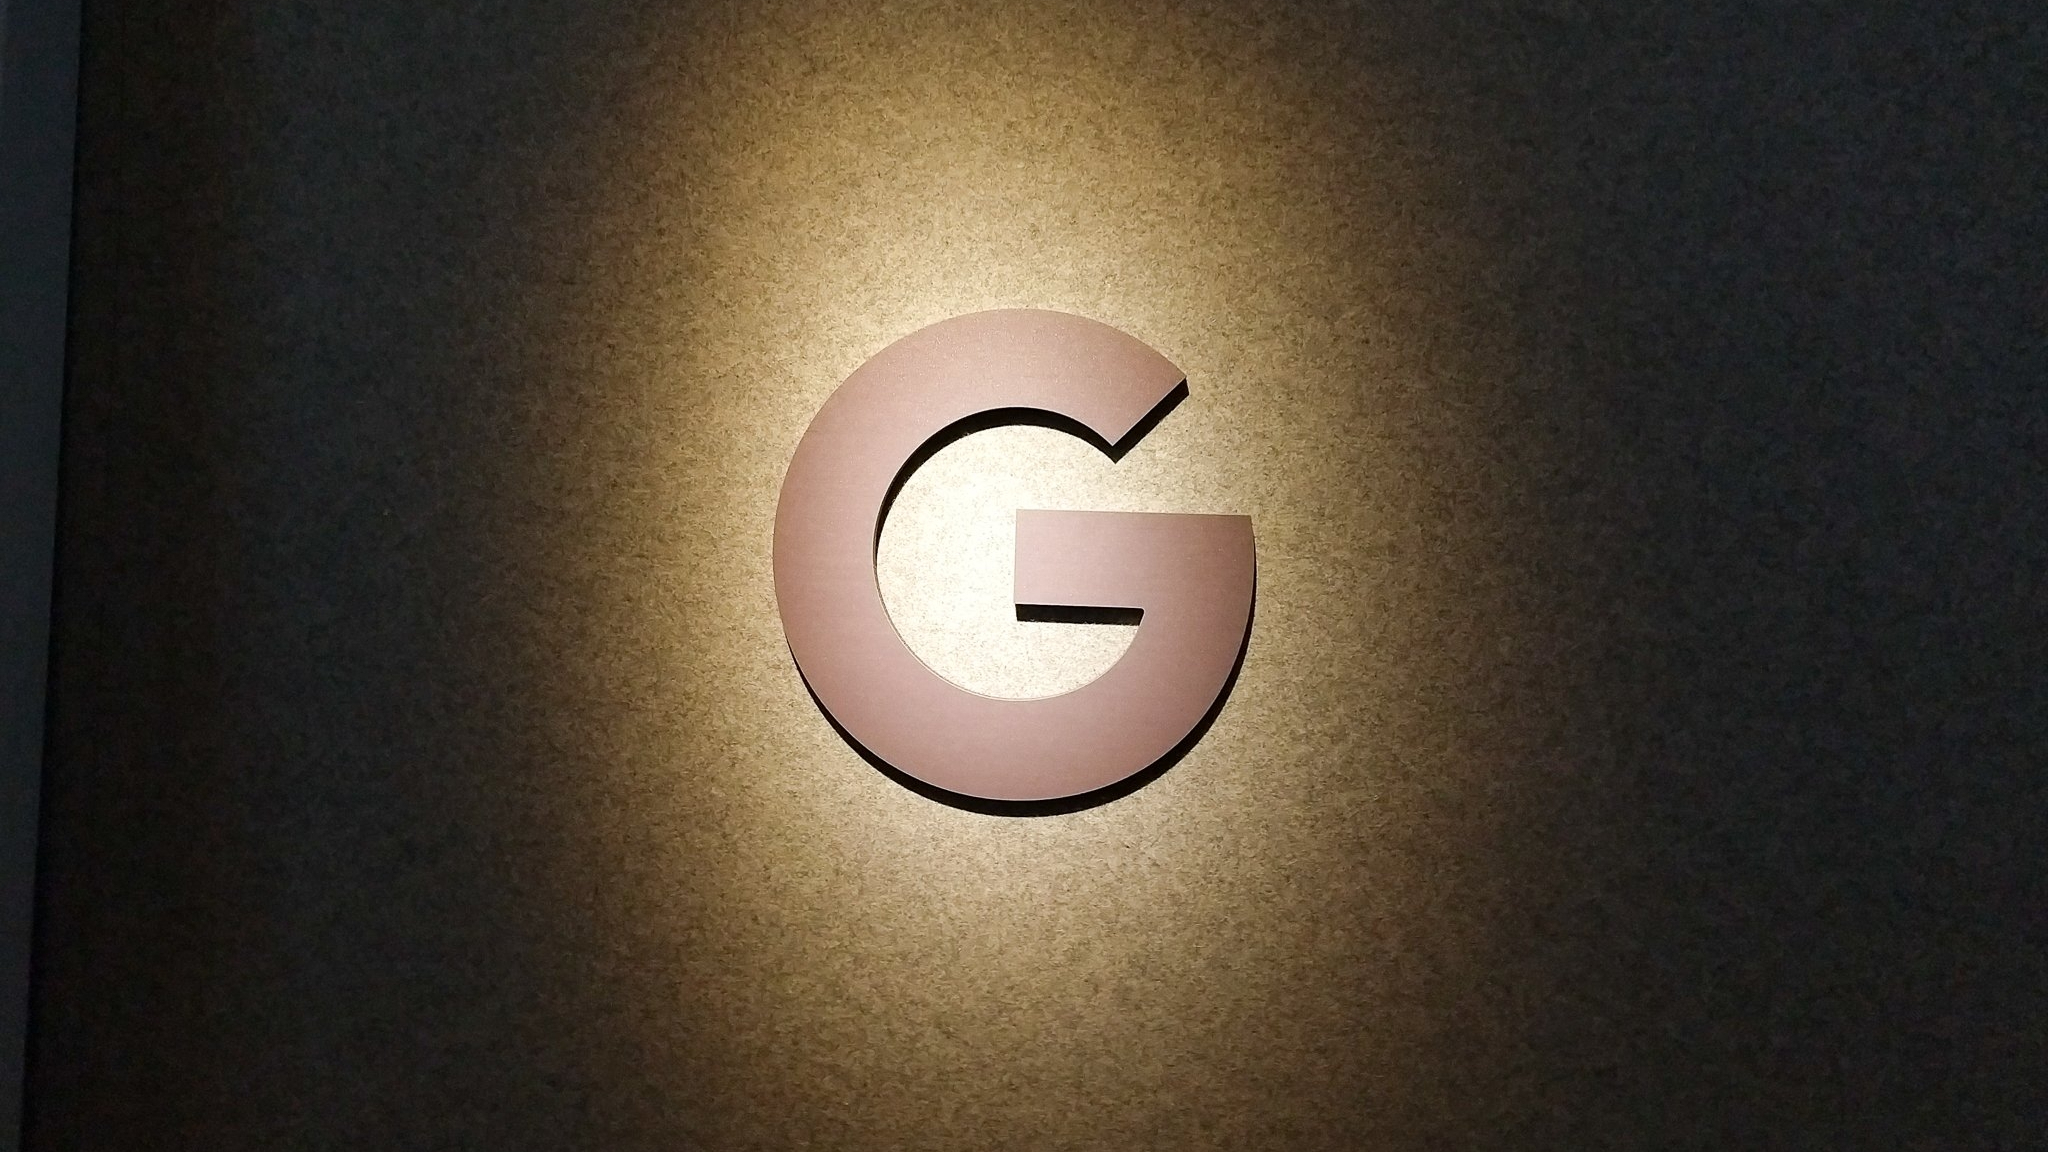 Logo Google w czerni i bieli w odcieniu sepii